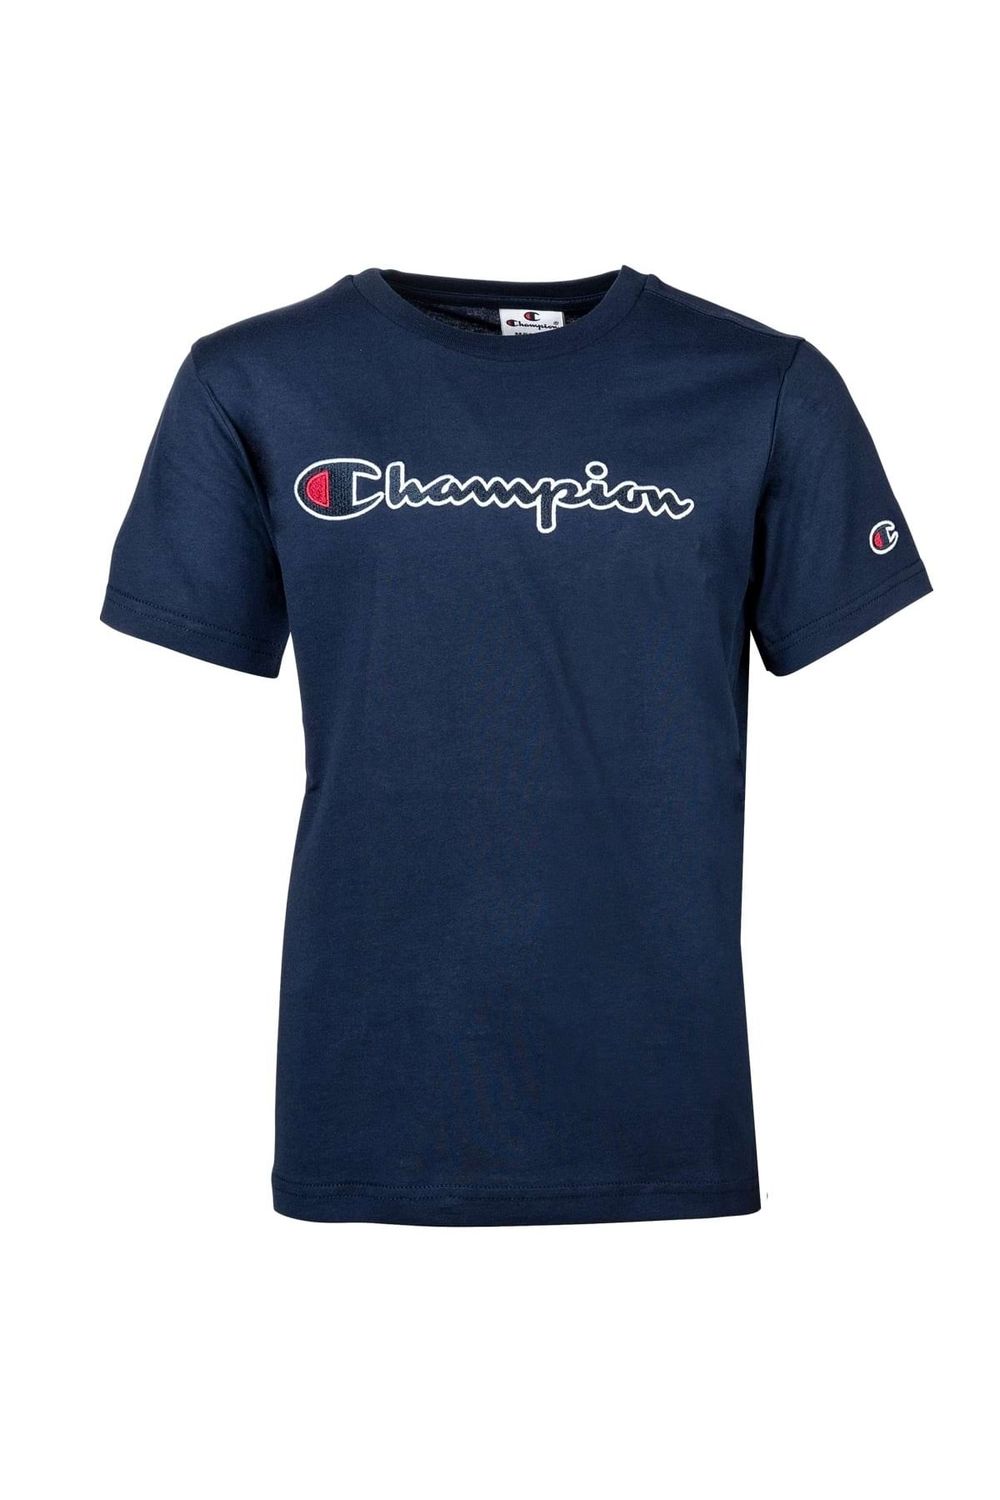 Champion Kinder Unisex T-Shirt Rundhals, - Crewneck, Trendyol Baumwolle, großes einfarbig Logo, 